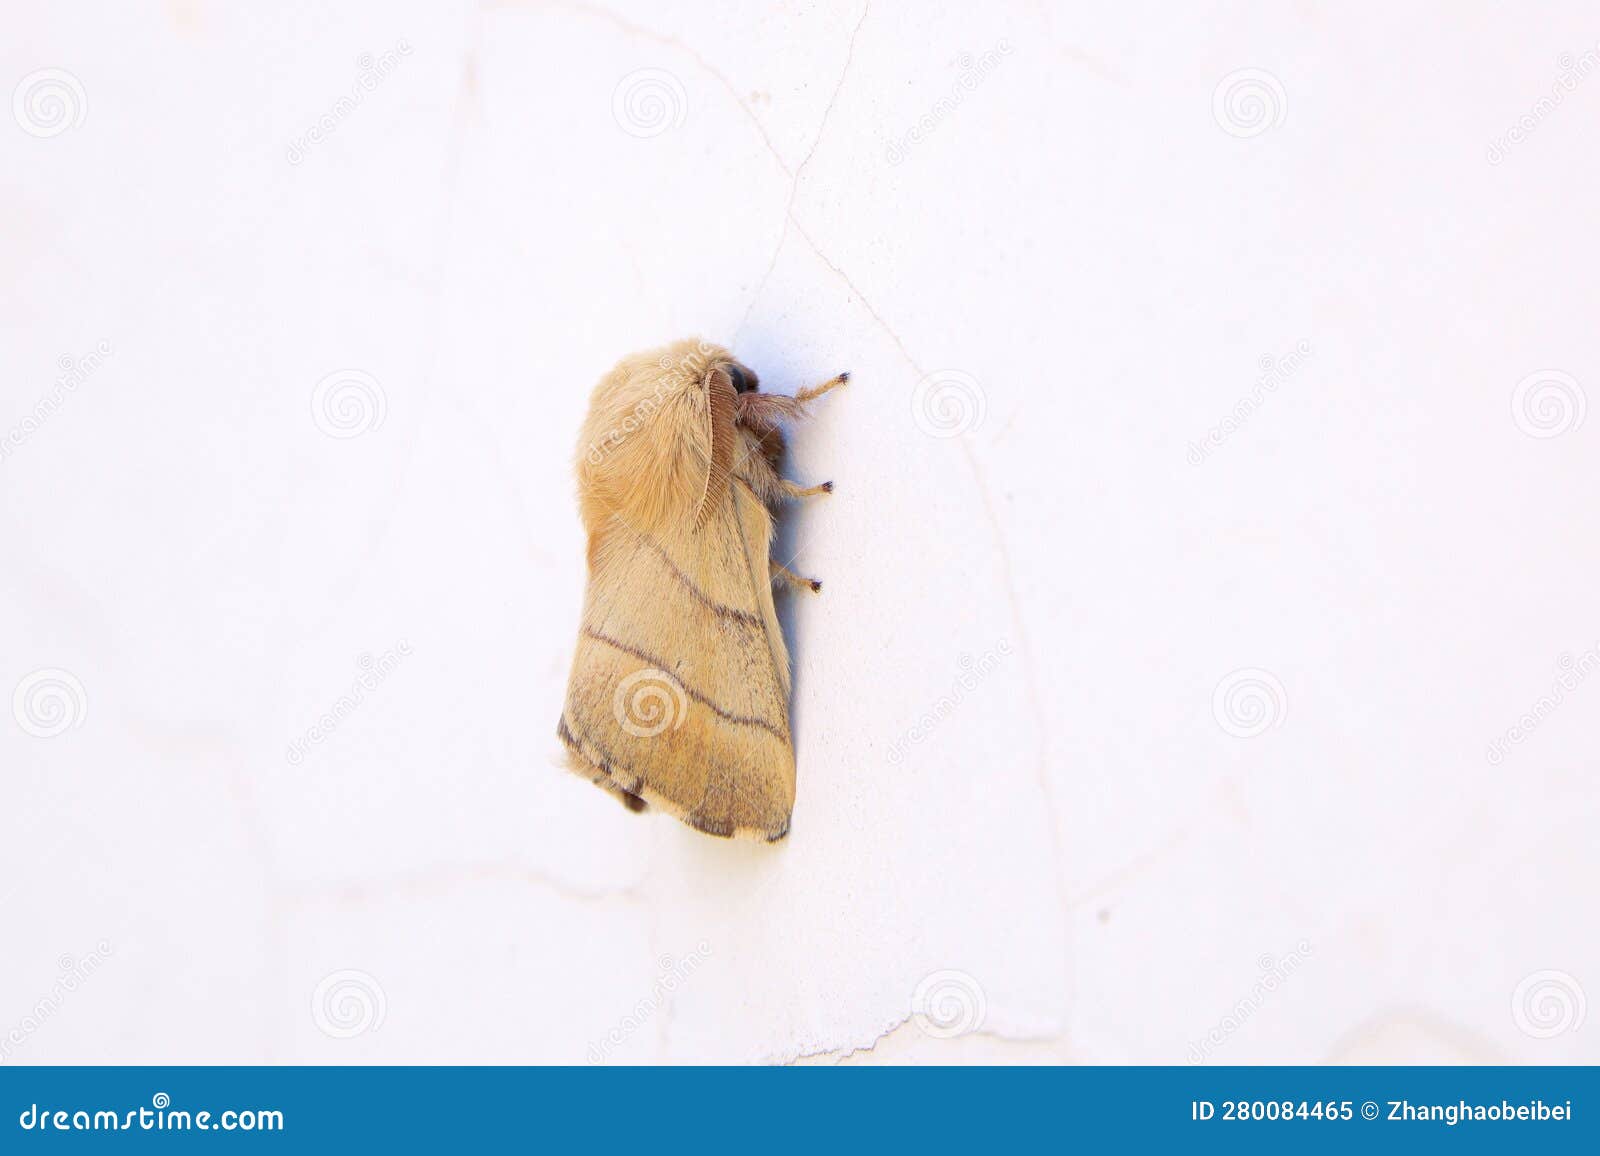 lasiocampidae moth